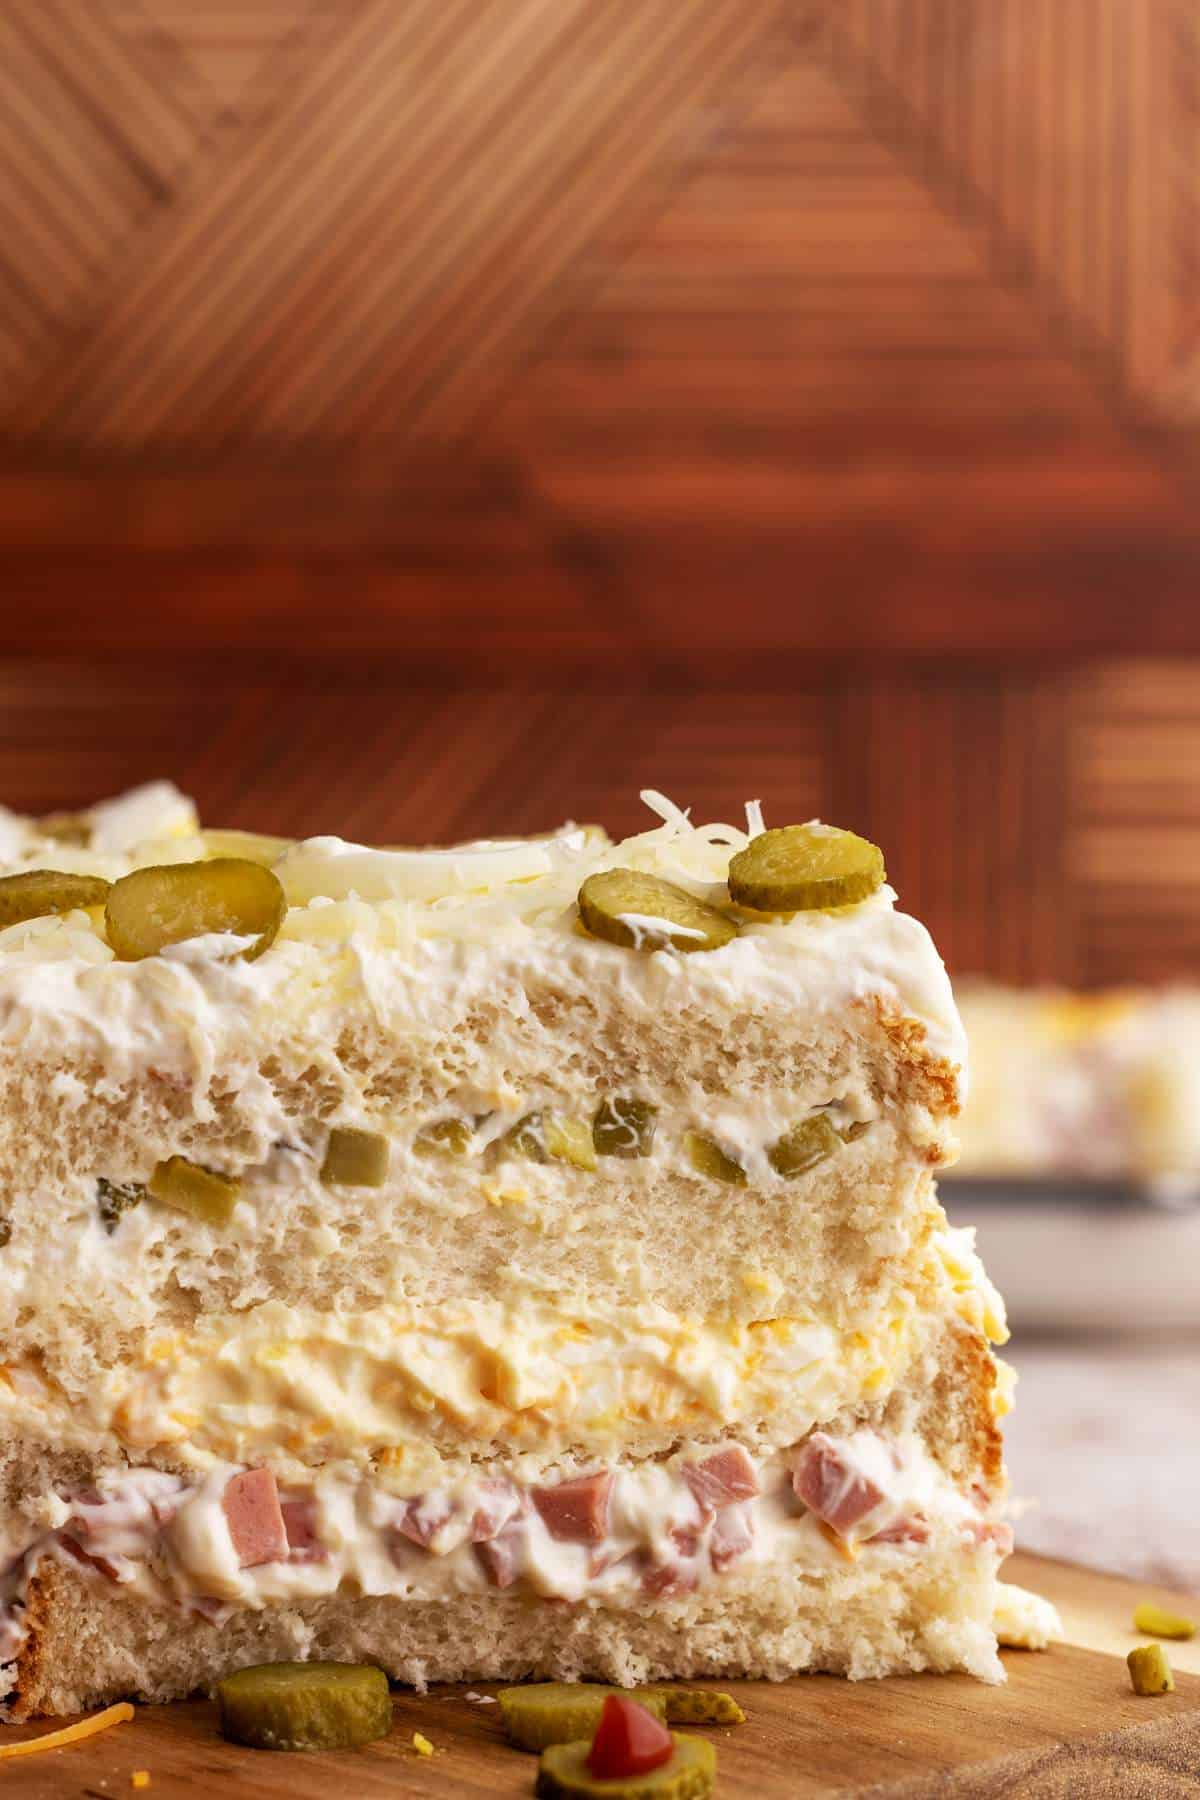 Savory sandwich cake close-up shot.